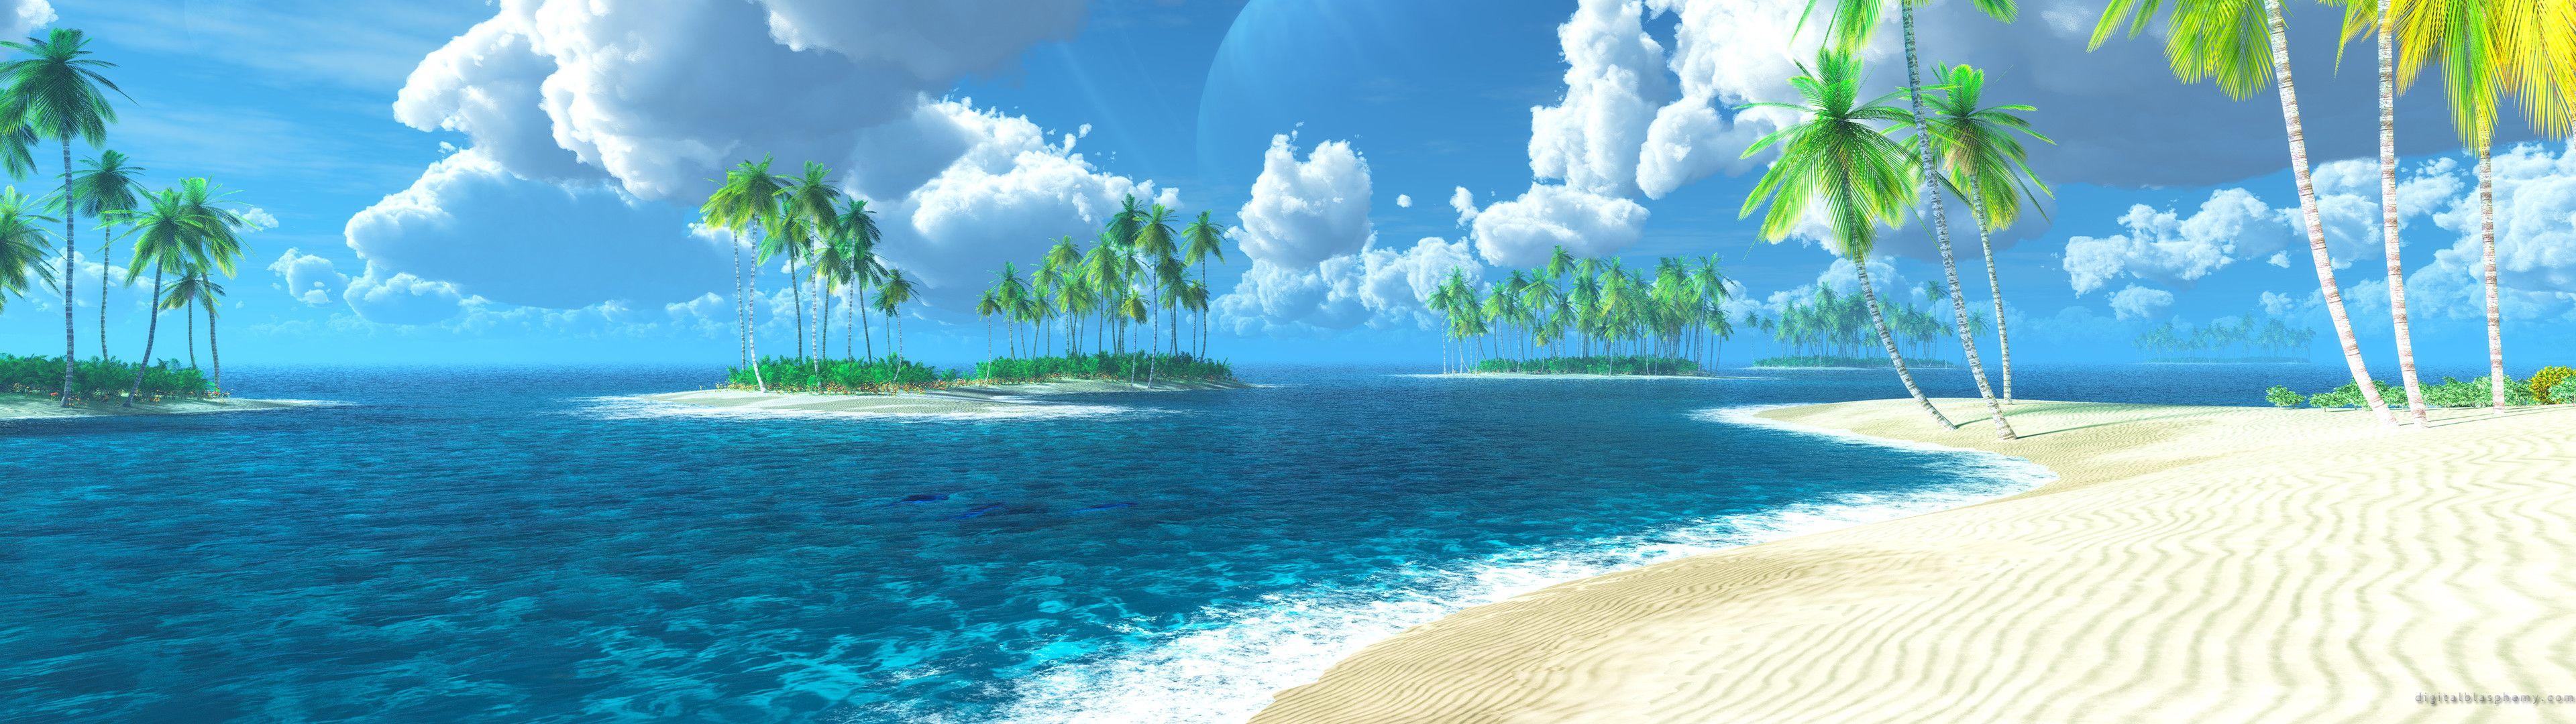 Beach Dual Screen Wallpapers - Top Free Beach Dual Screen Backgrounds